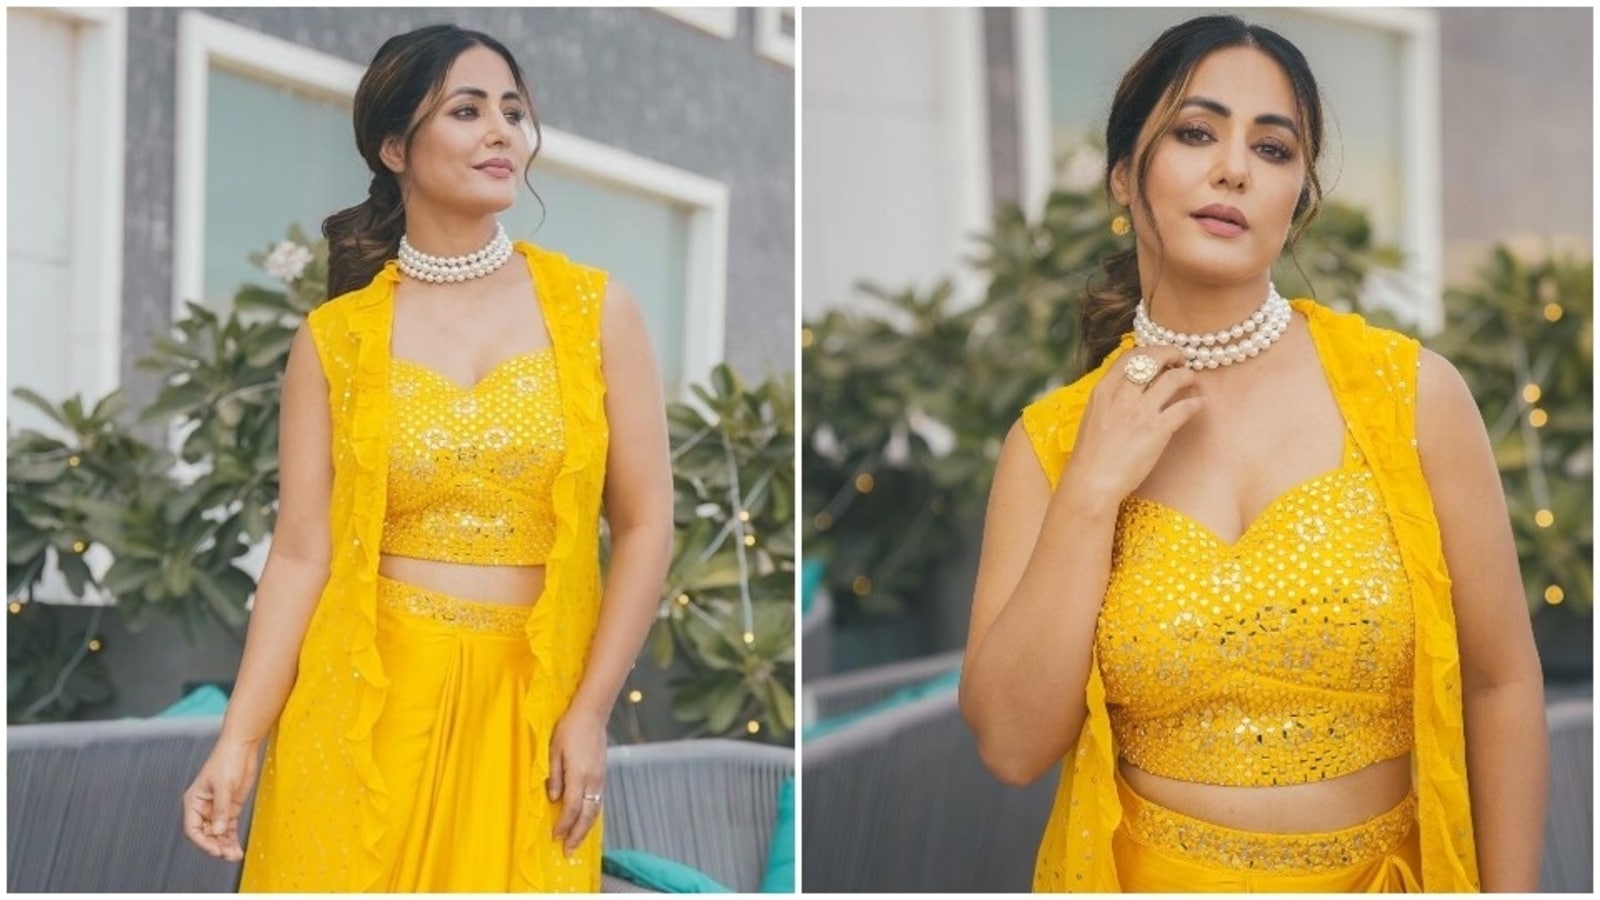 Dress up Pretty on This Karwa Chauth with Fashion Choices – Zari Jaipur